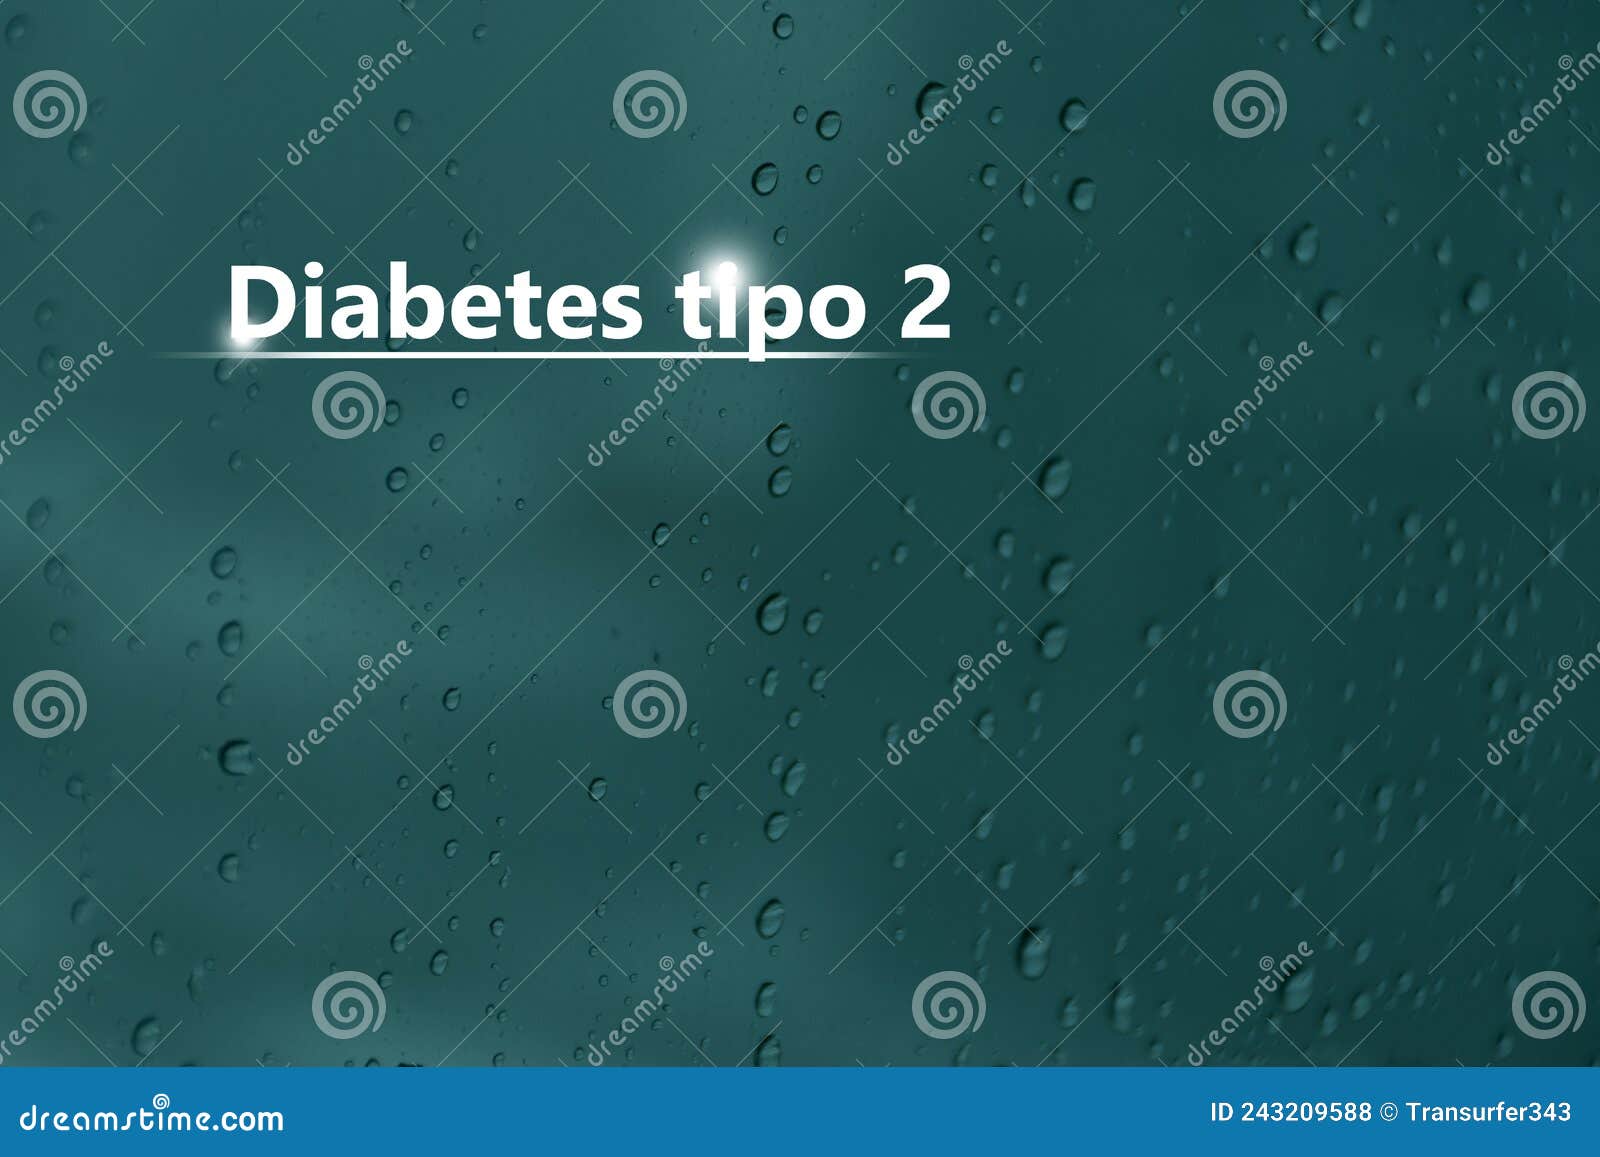 diabetes tipo 2 - diagnÃÂ³stico y tratamiento, lista de comprobaciÃÂ³n mÃÂ©dica. fondo texturizado y espacio de copia vacÃÂ­o para